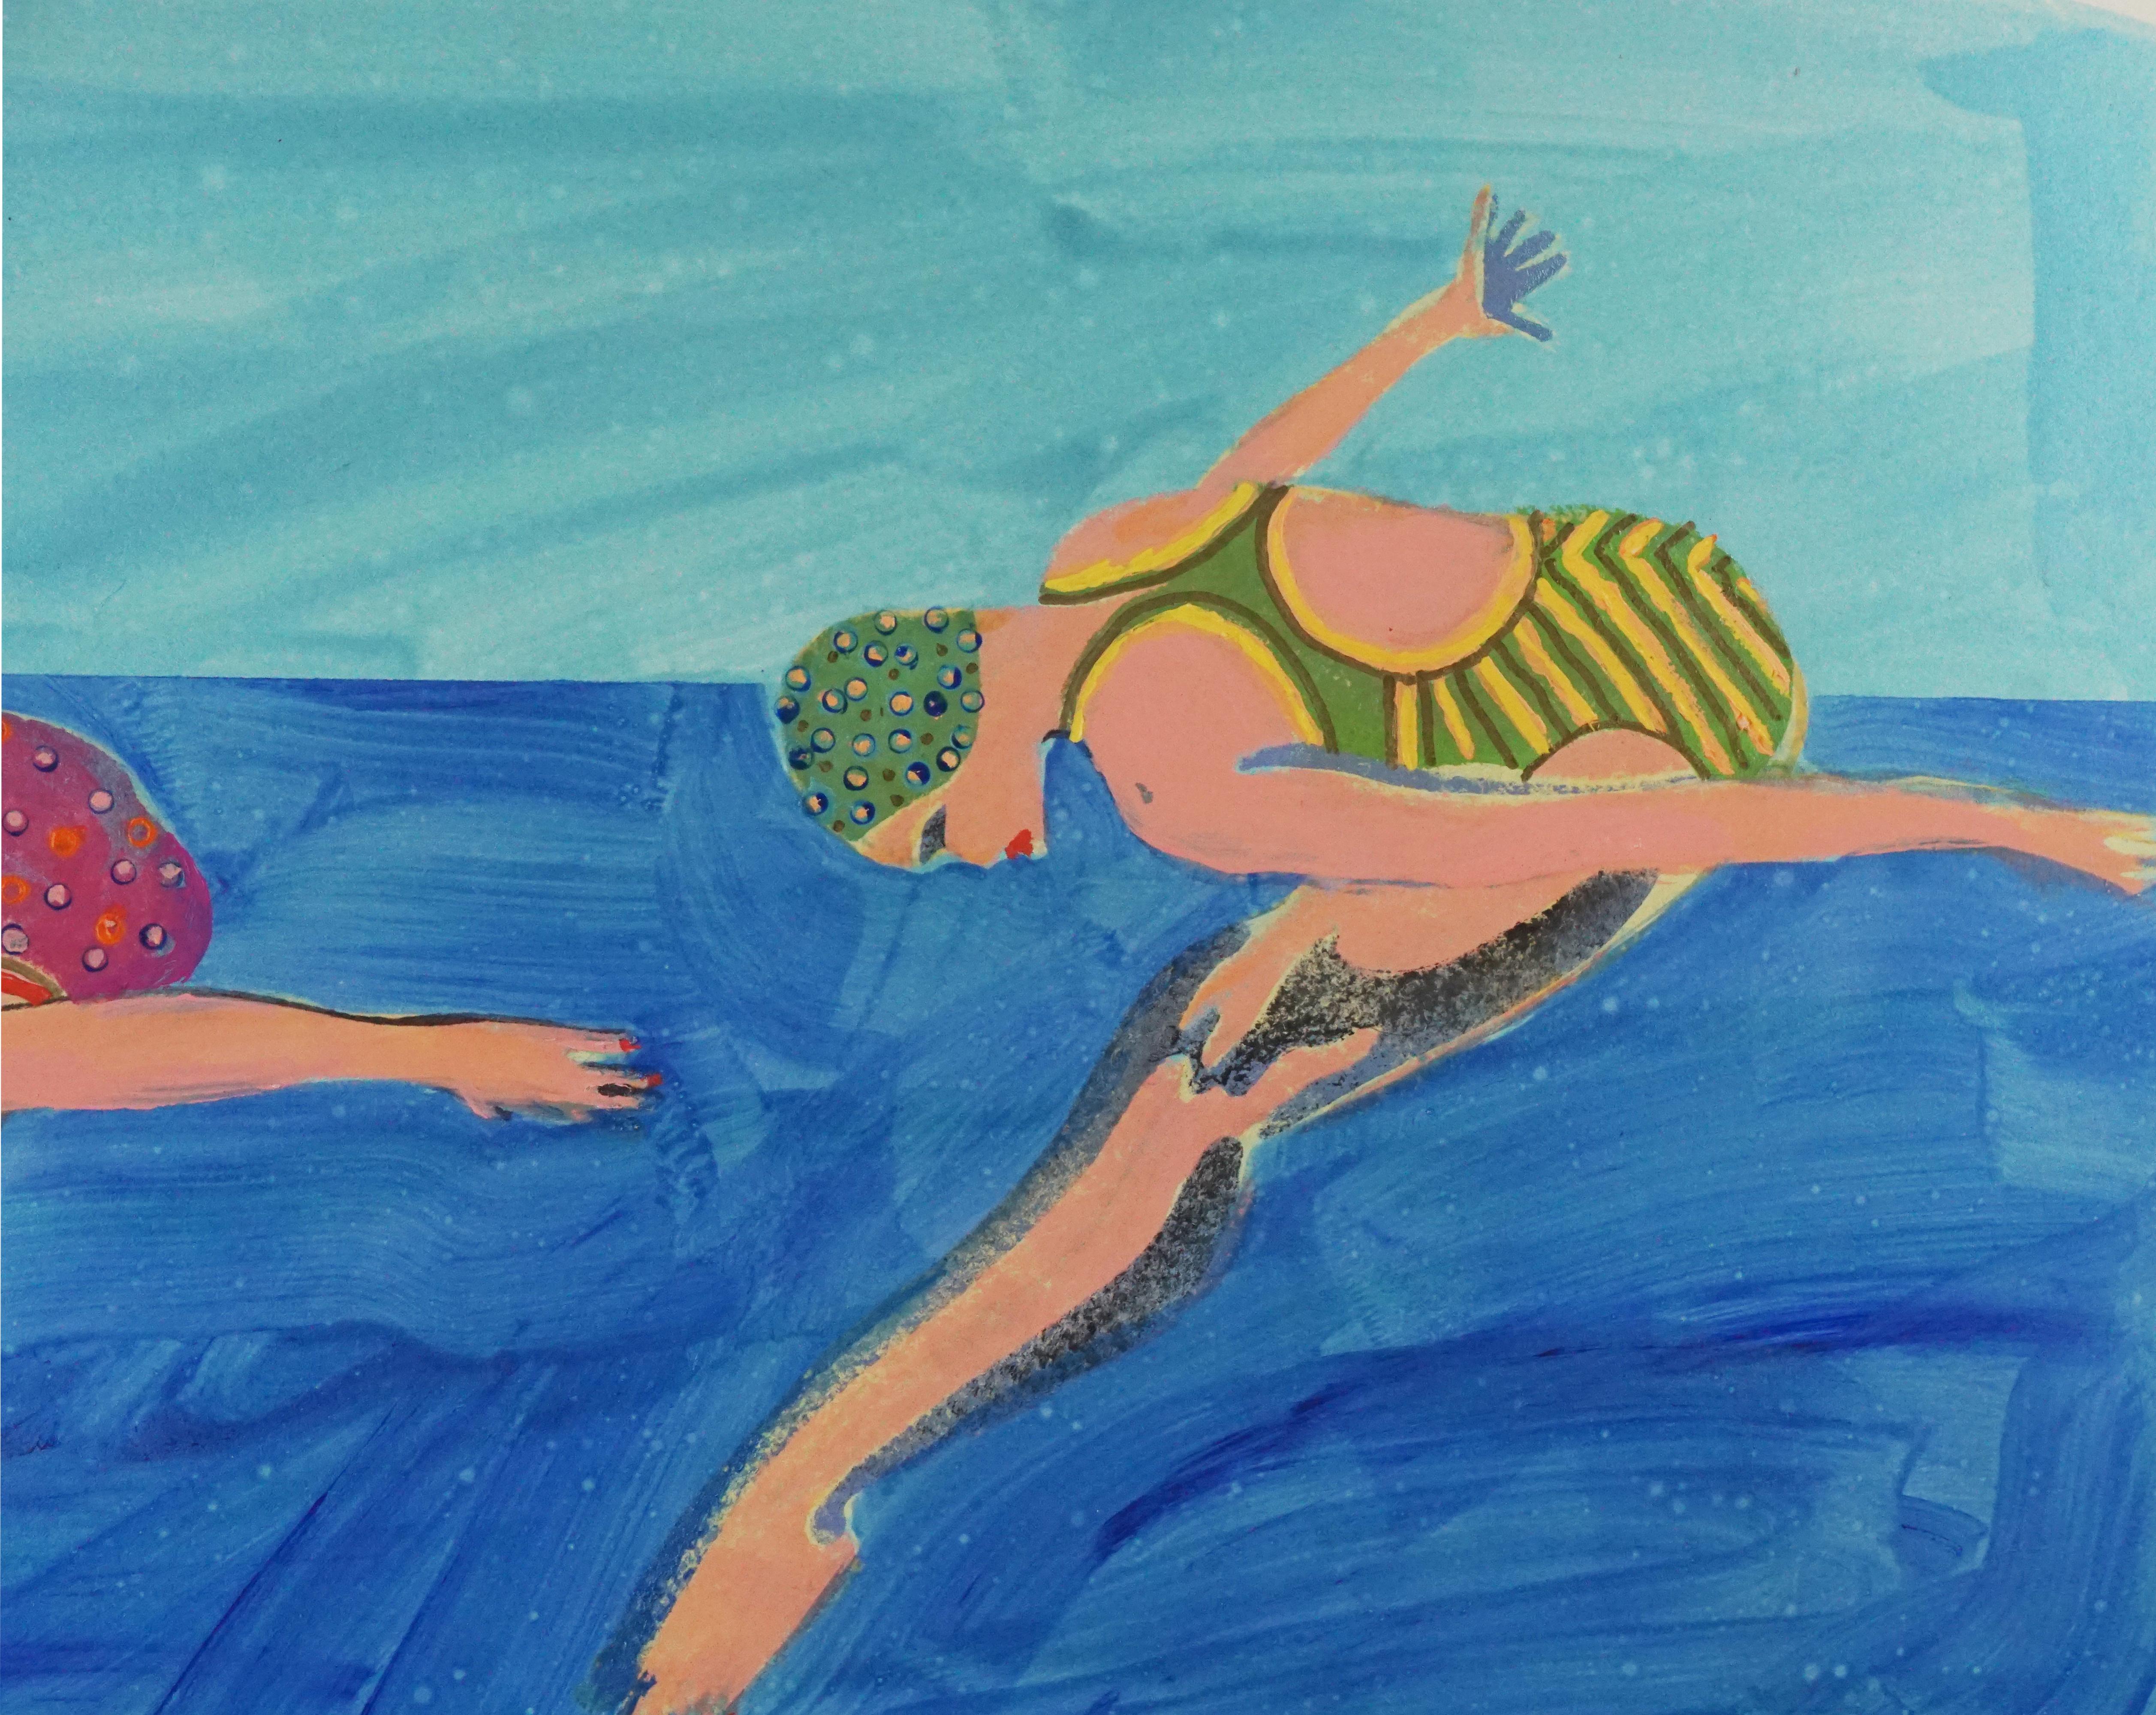 Lebendiges, zeitgenössisches Acrylgemälde auf Papier im Pop-Art-Stil von Marc Foster Grant (Amerikaner, geb. 1947) aus dem Jahr 2007, das zwei Synchronschwimmerinnen zeigt, die gemeinsam vor einem hellblauen Hintergrund posieren. Die Figuren tragen